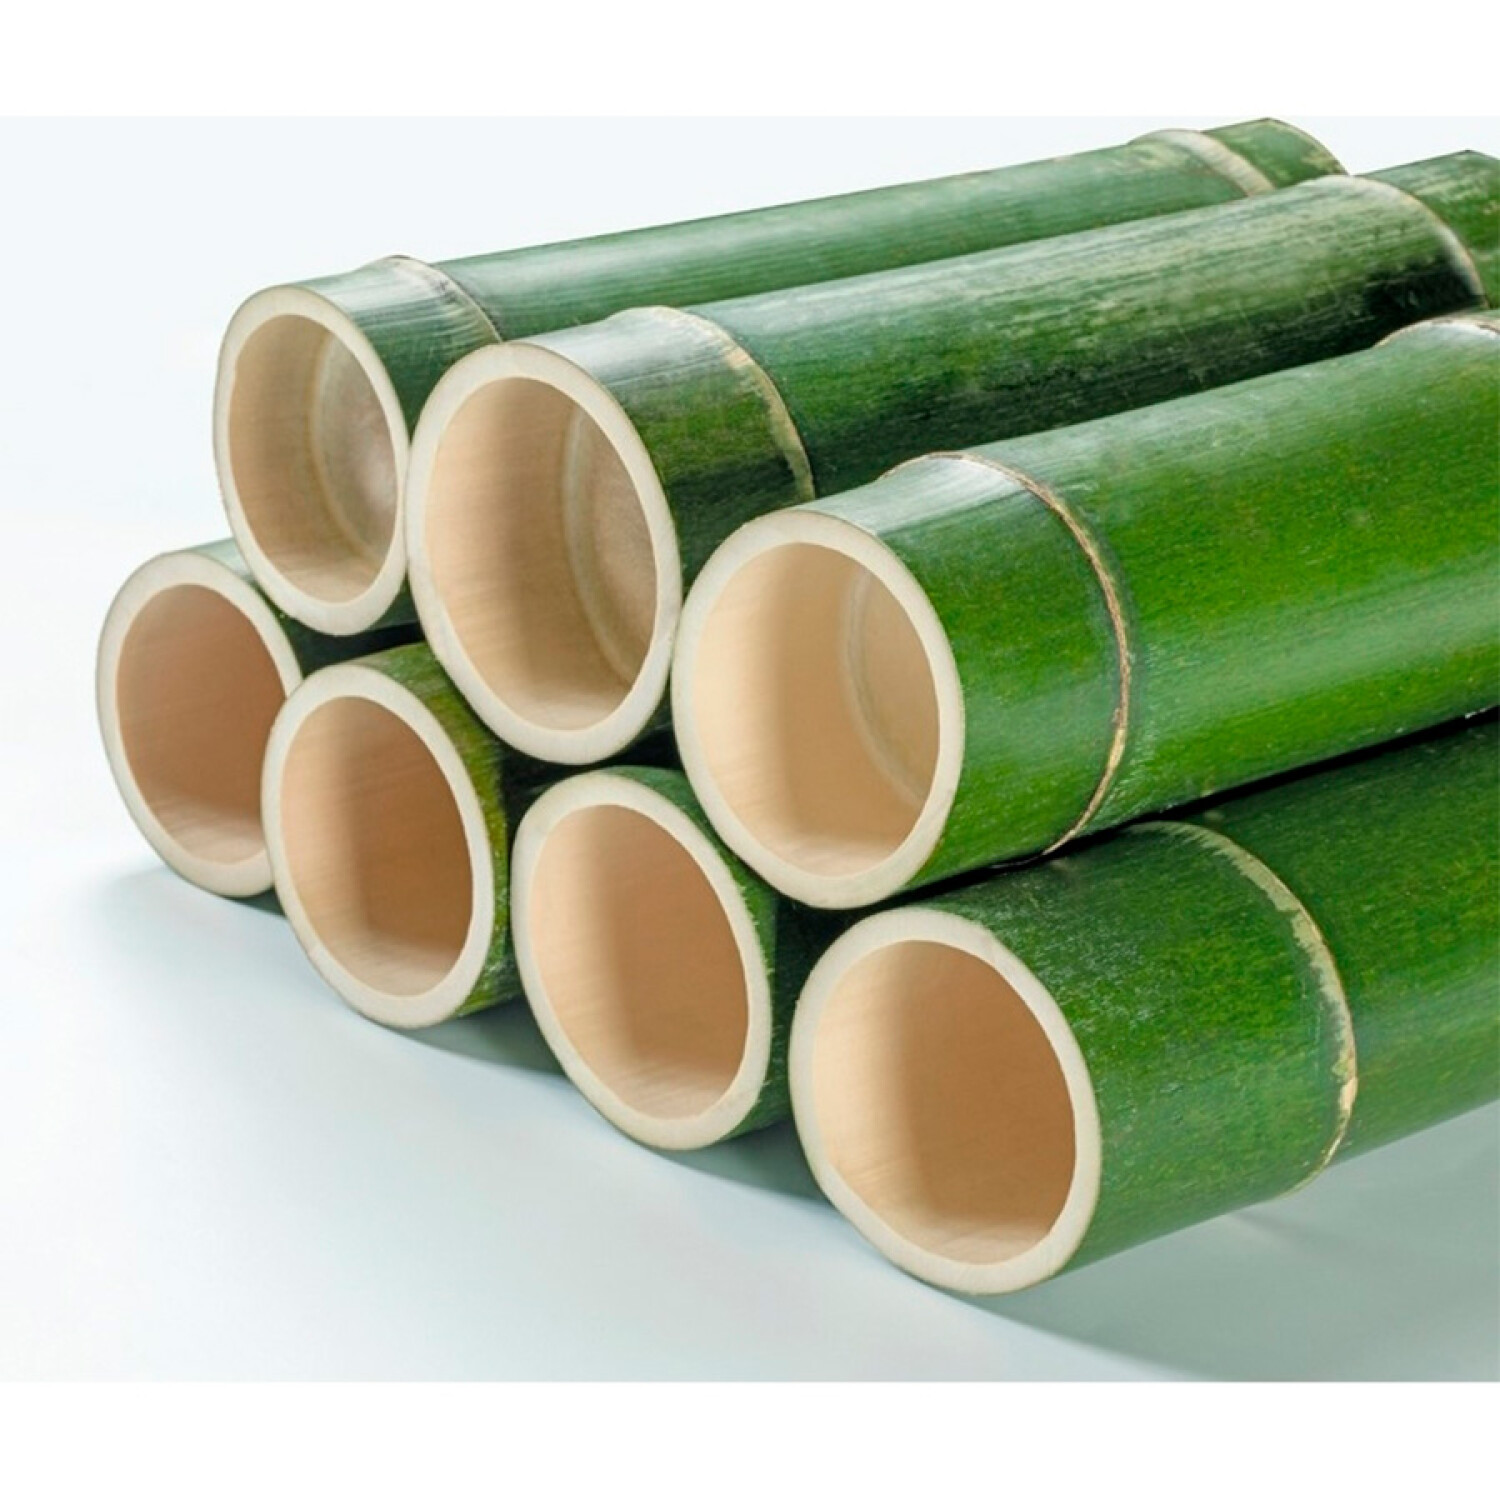 Perchero De Bambú Natural Con Ruedas - 001 — Universo Binario